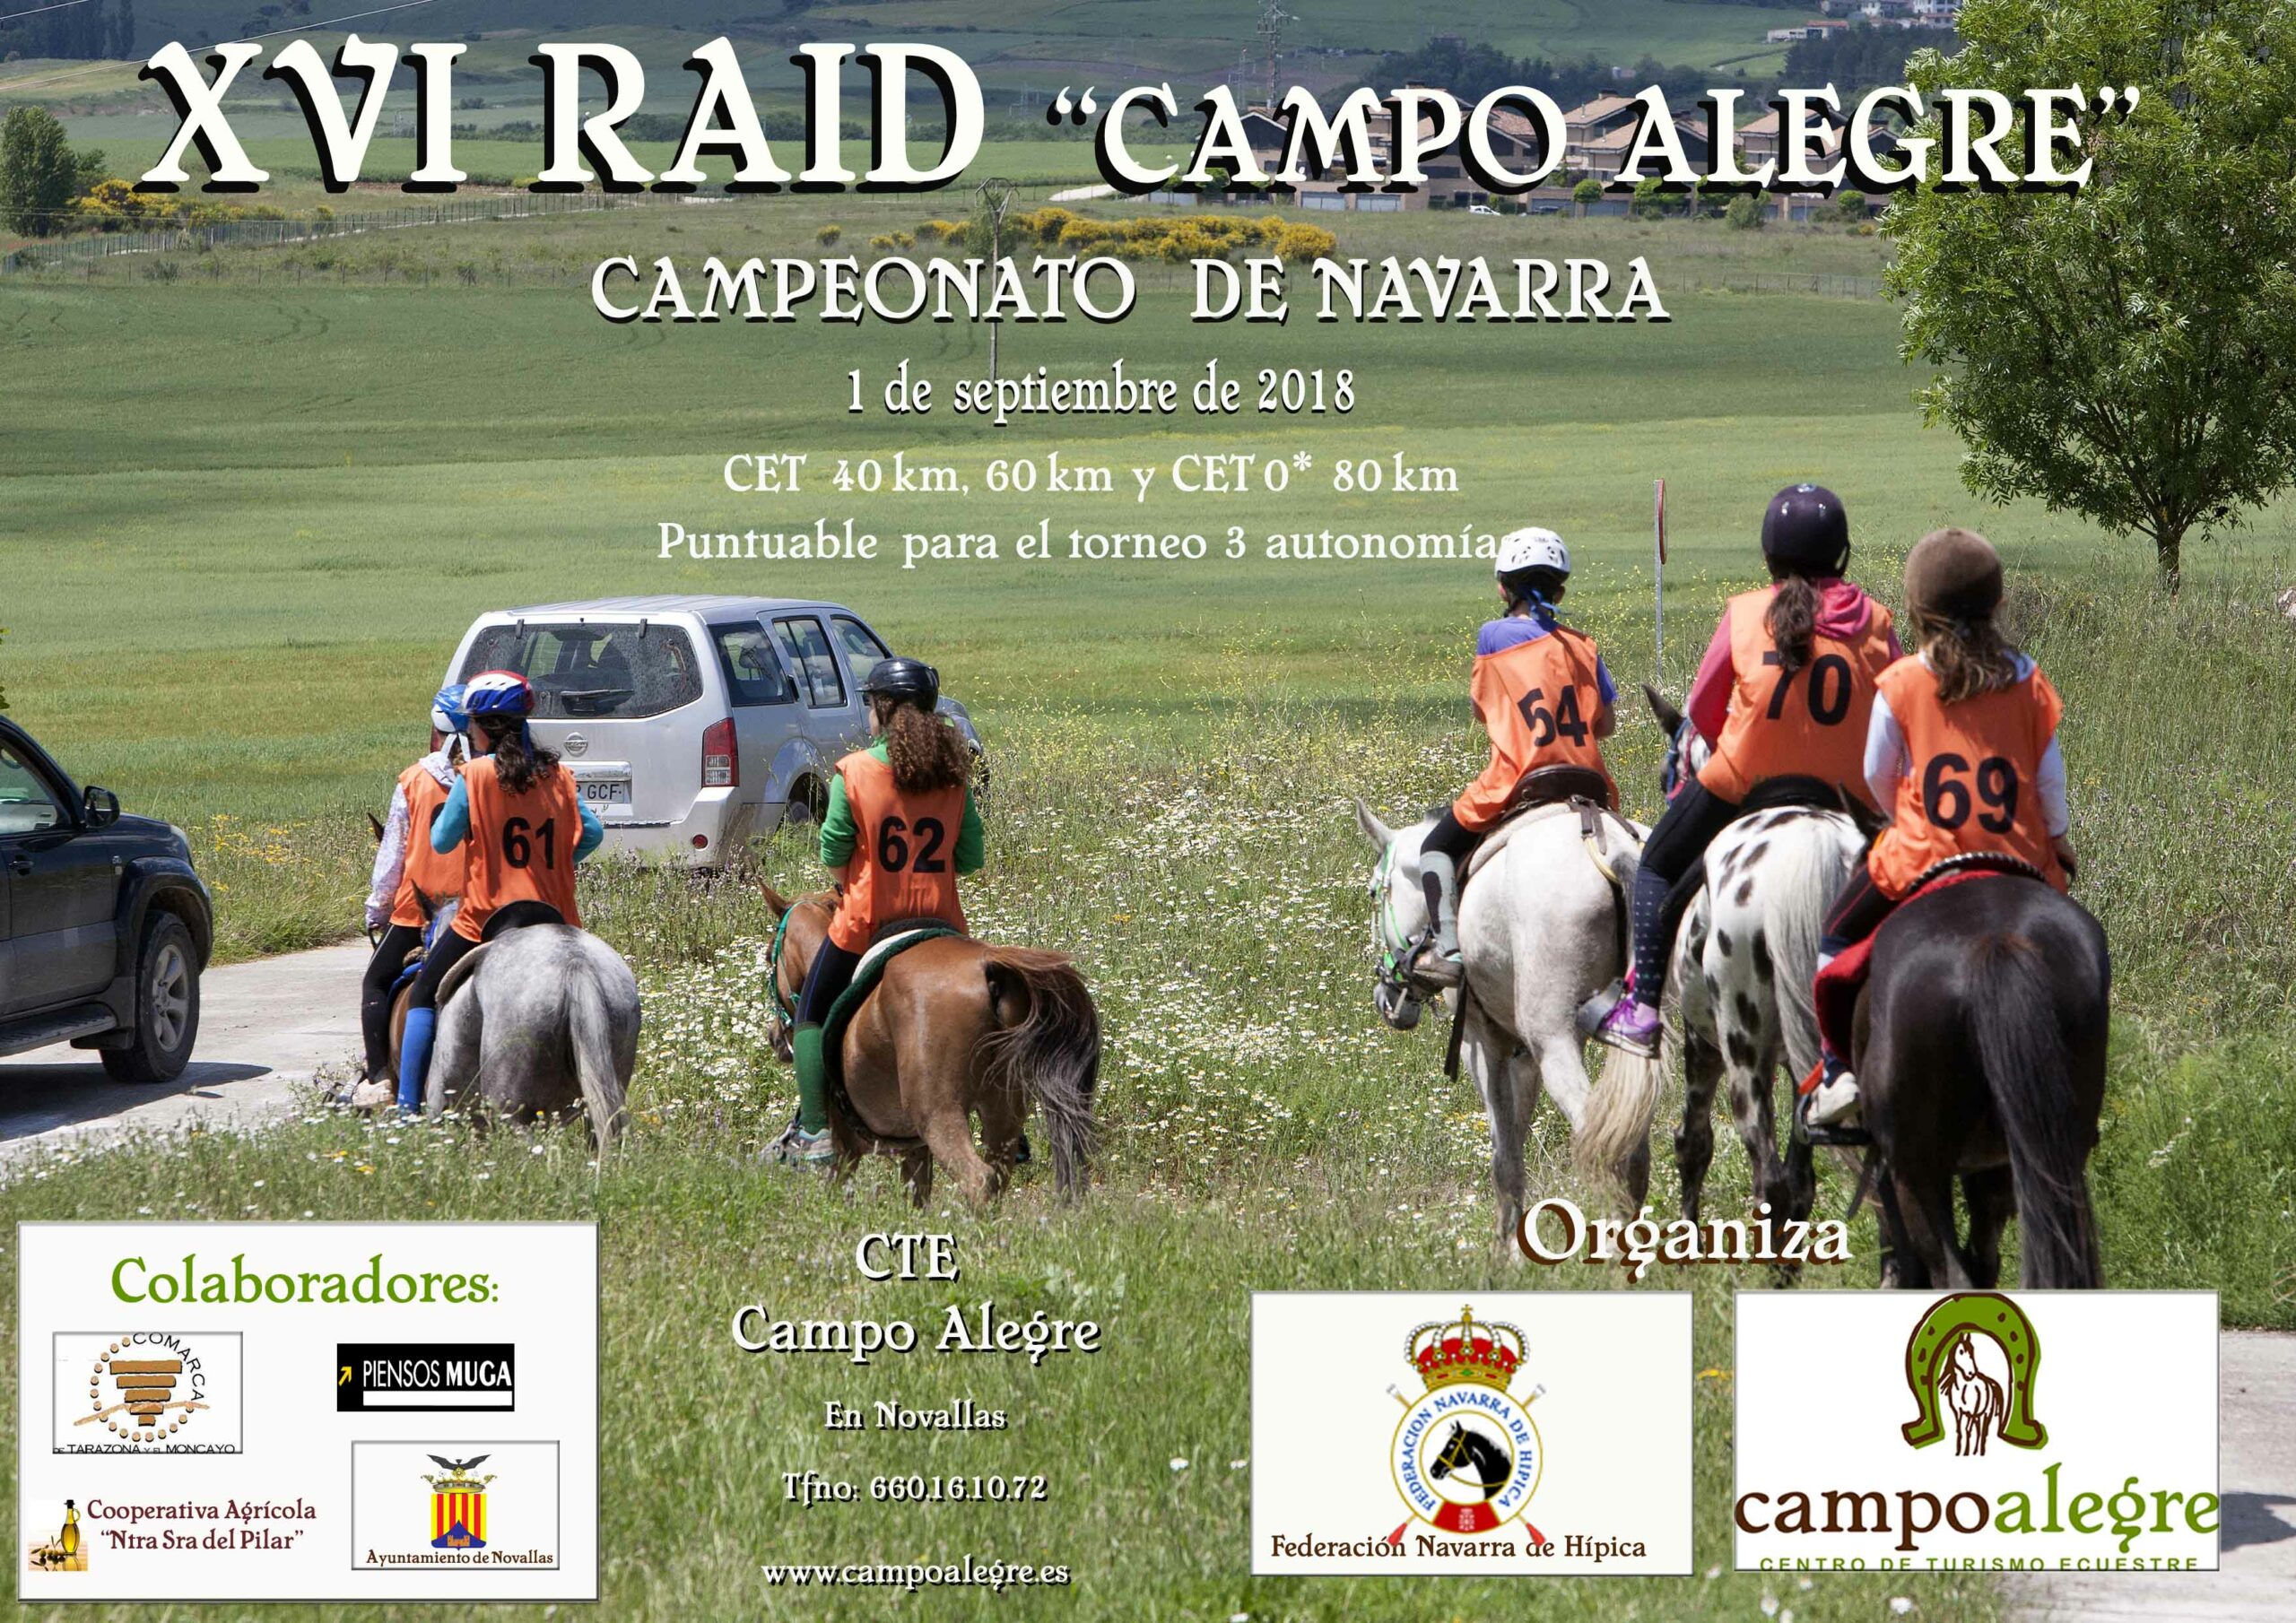 Campeonato Navarro de Raid CET0*, CET60 km y CET40 km, el 1 de septiembre en el Club Hípico Campo Alegre